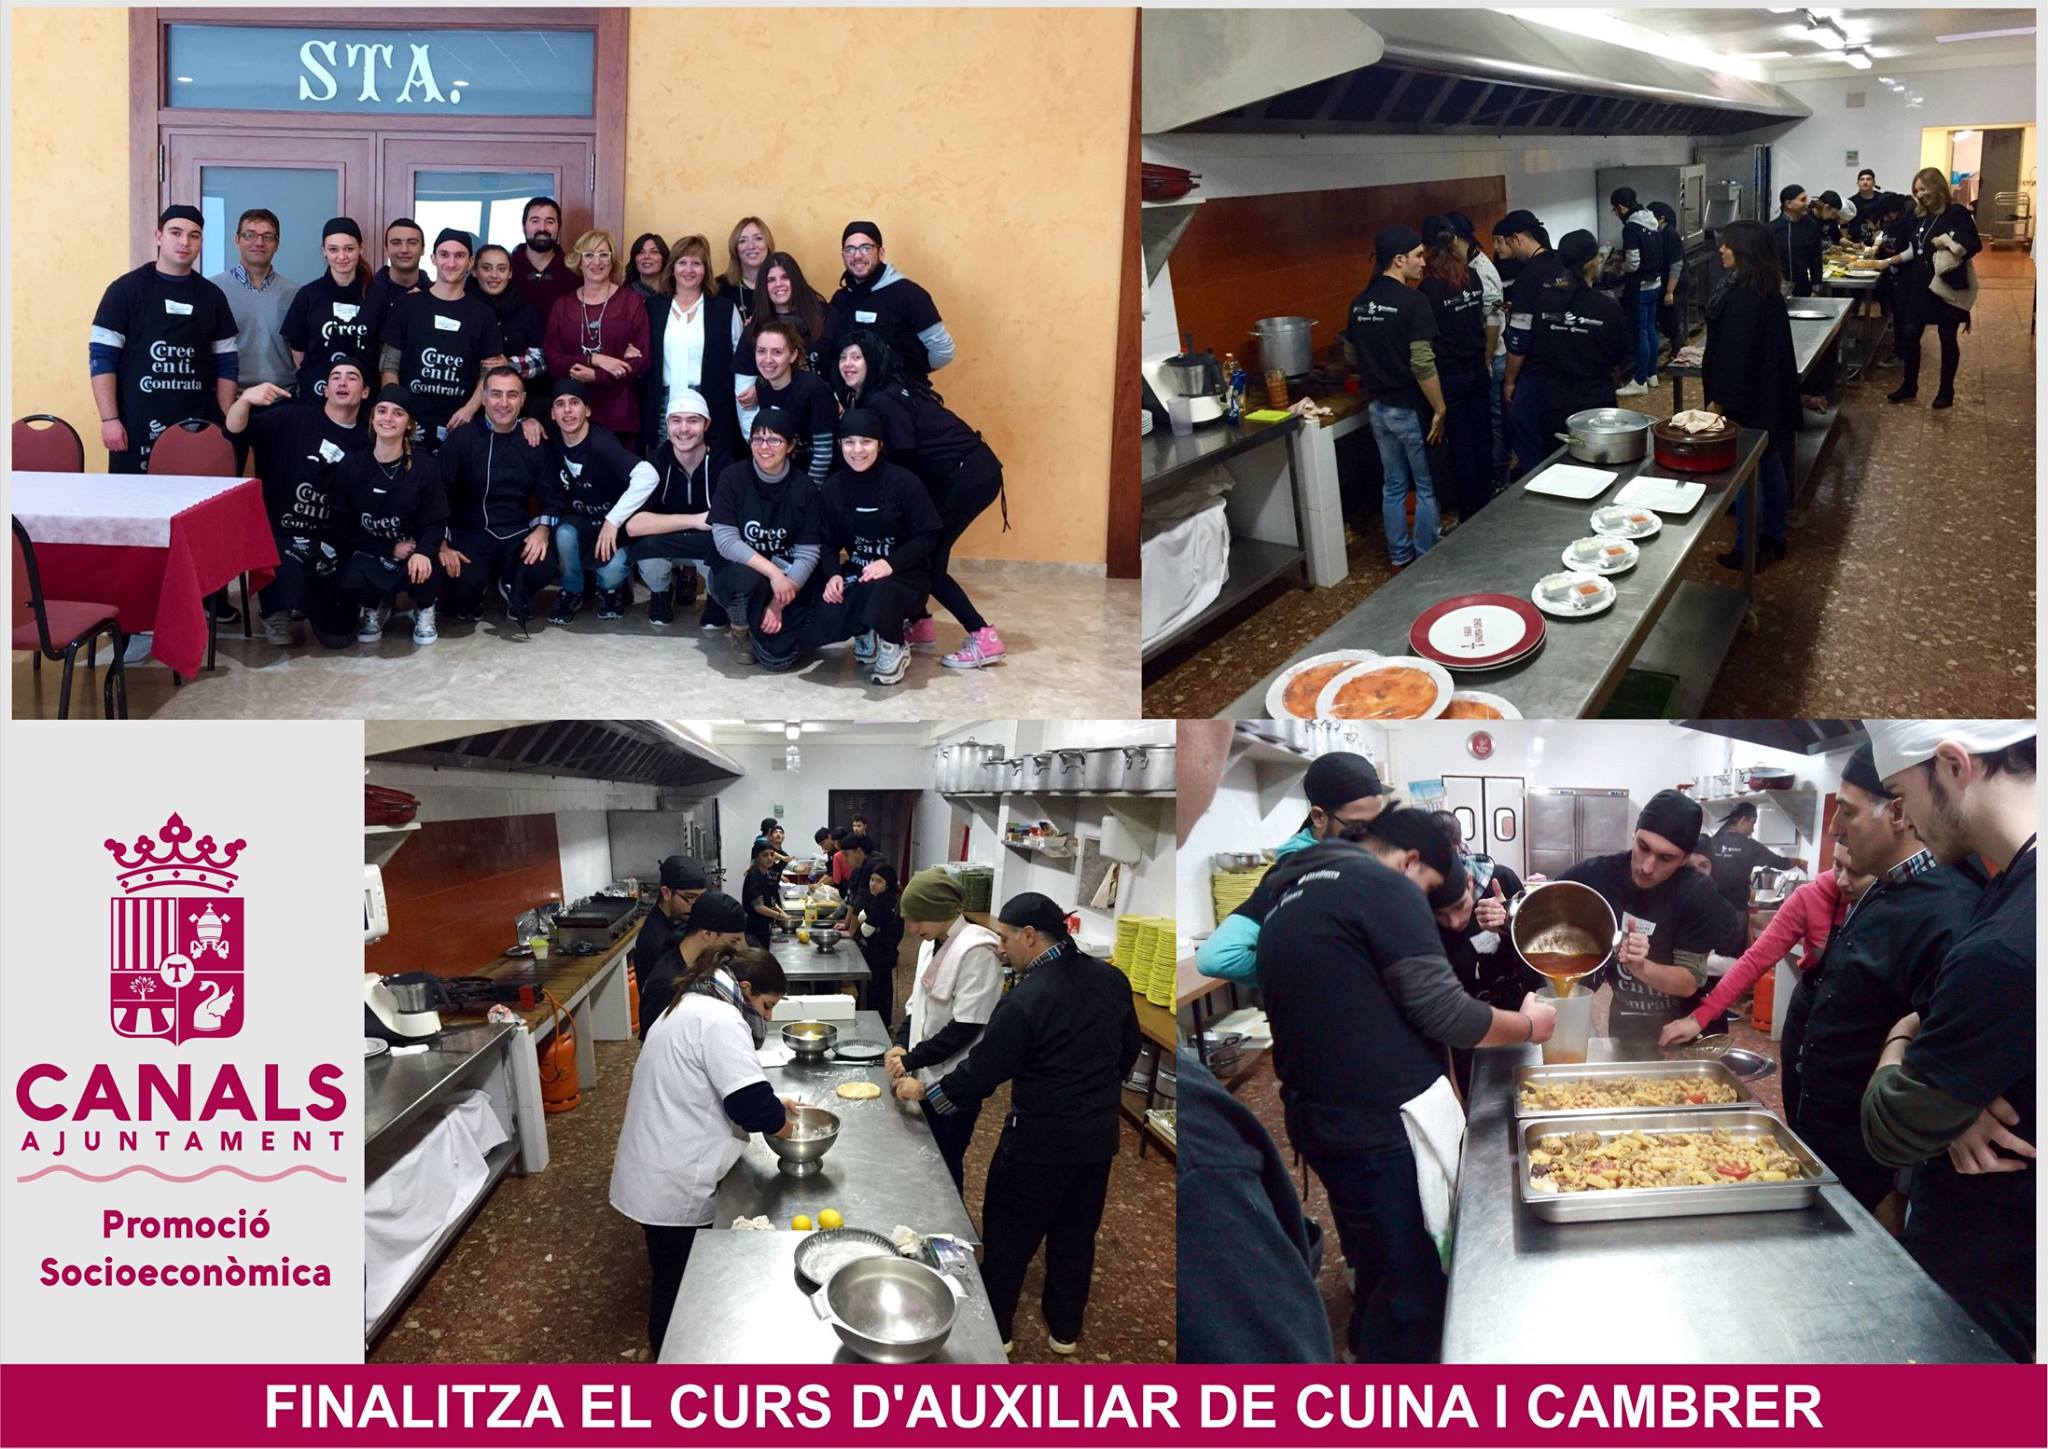 2016.12.28 Finalitza el curs de cuina i cambrer. Ajuntament de Canals.